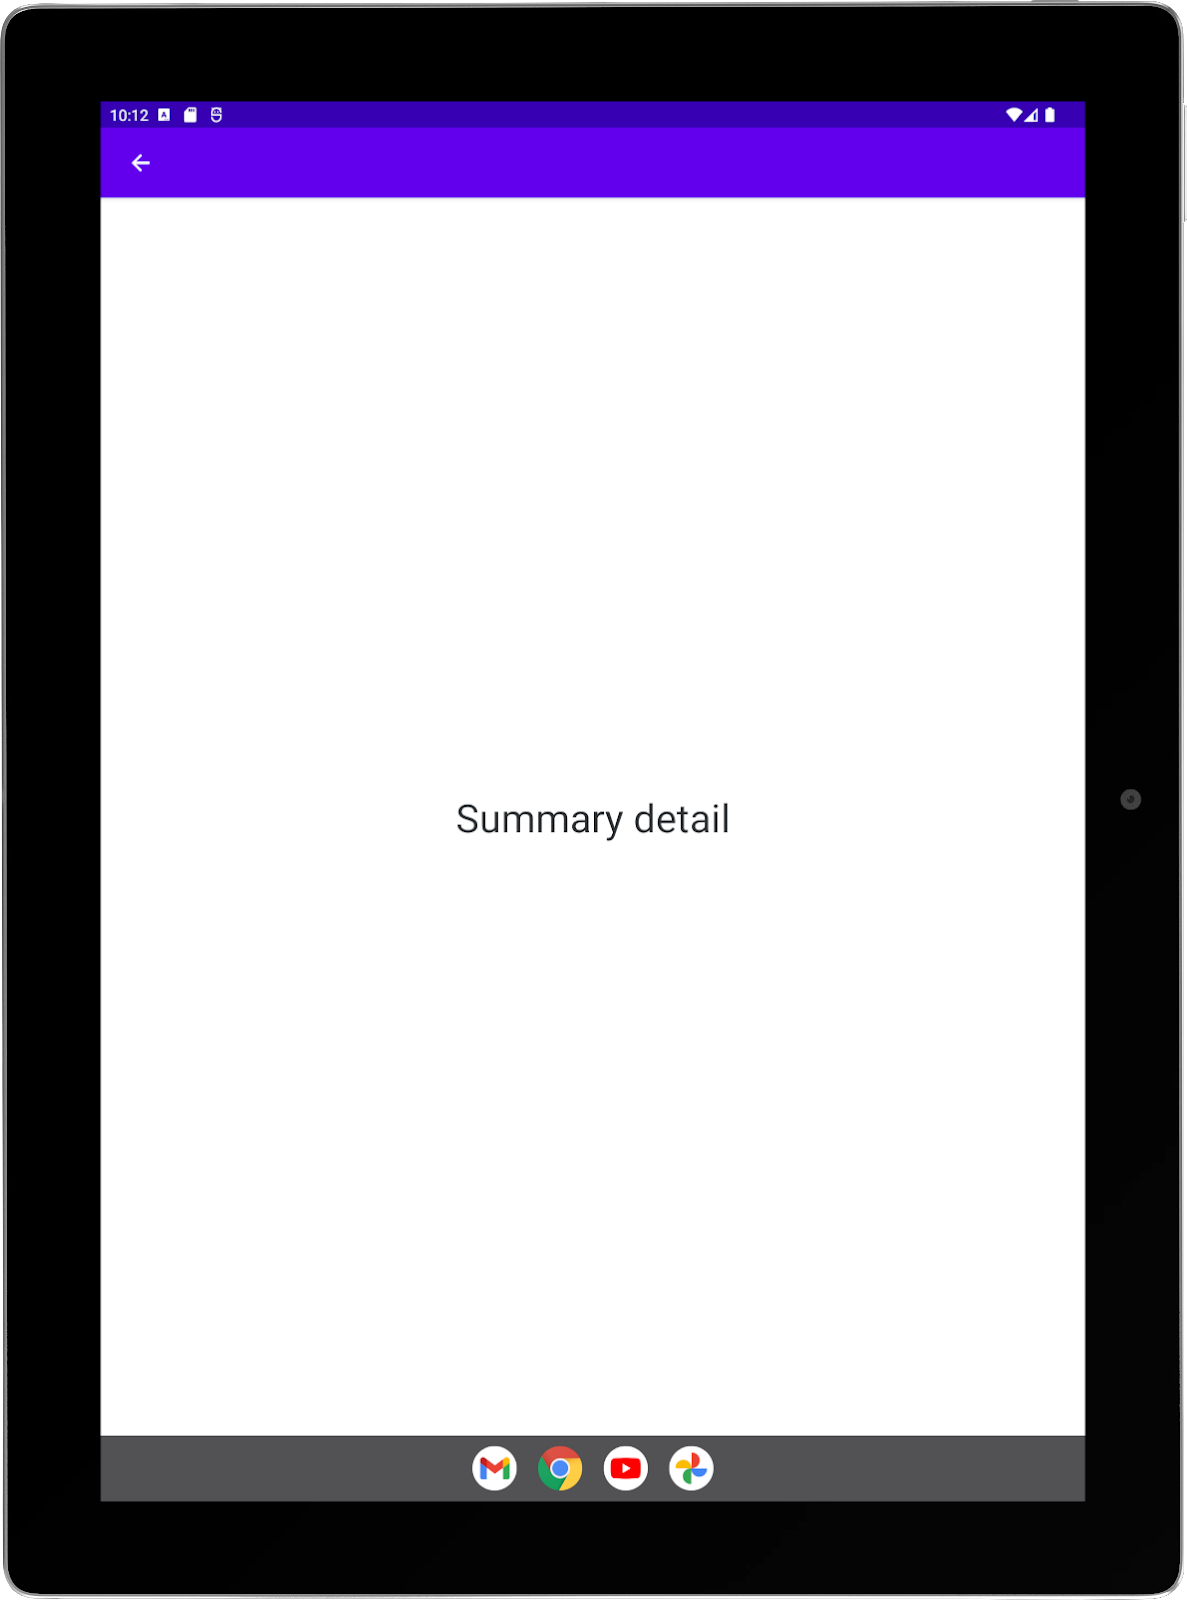 Tablet grande con la app de ejemplo ejecutándose en orientación vertical. Pantalla completa de la actividad de resumen.